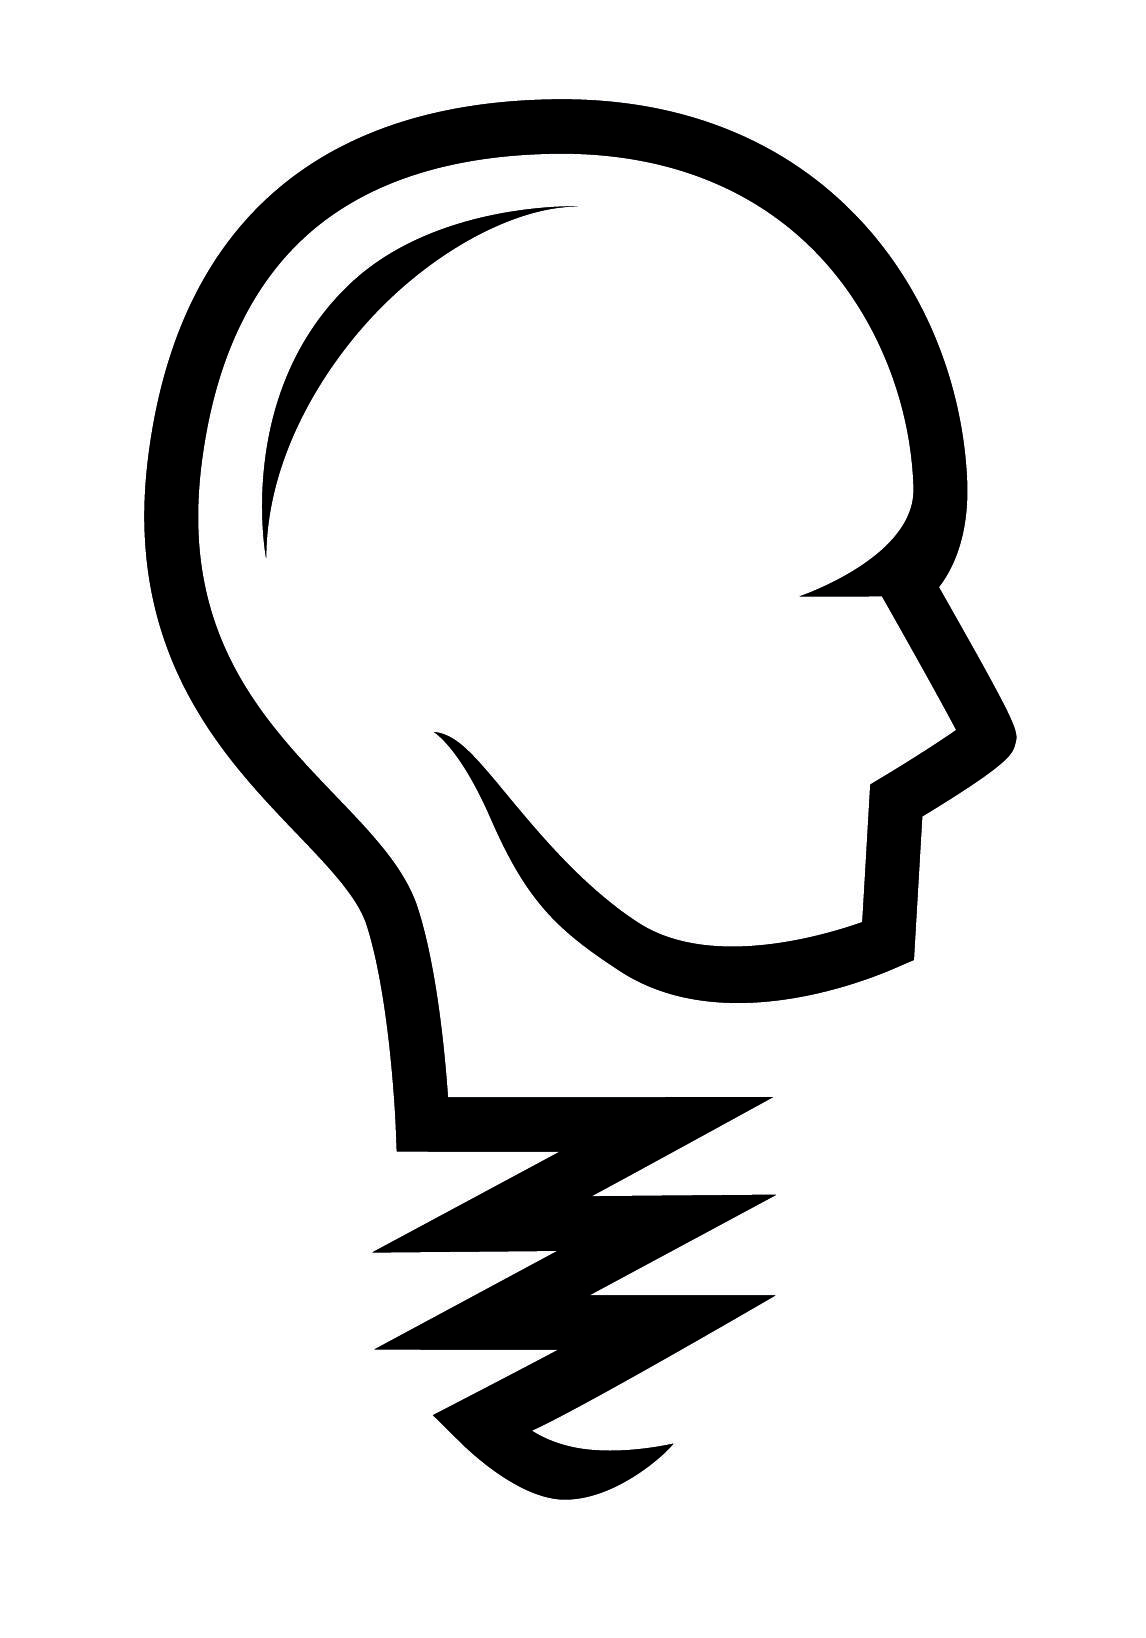 Invention Logo - Inventorhaus Inc.